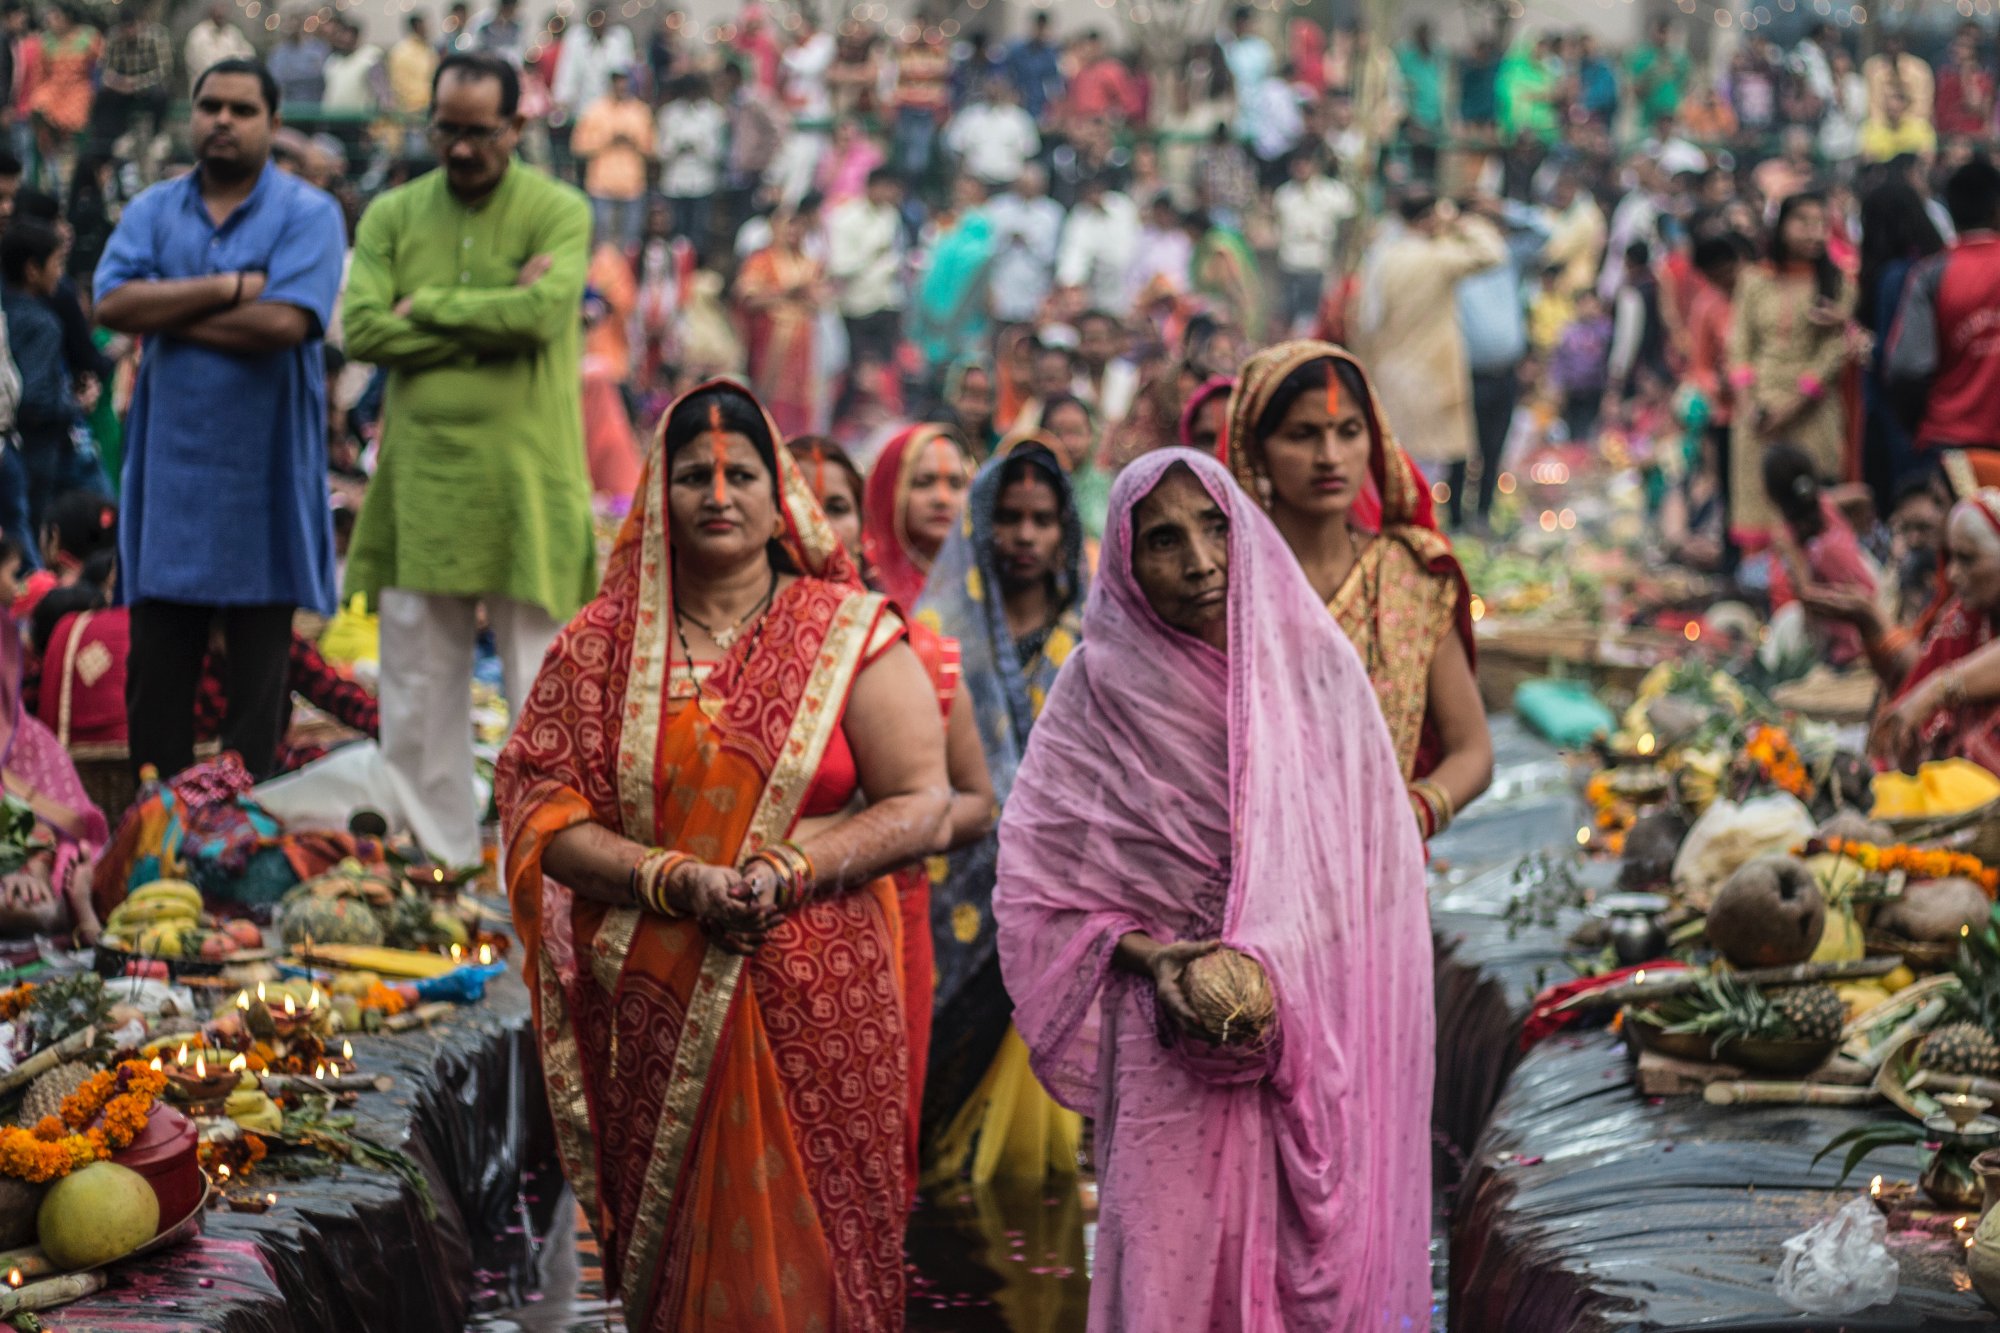 Ινδία: Το 1/3 των μελών του κοινοβουλίου θα είναι αποκλειστικά γυναίκες - Μία αλλαγή που θα πάρει καιρό